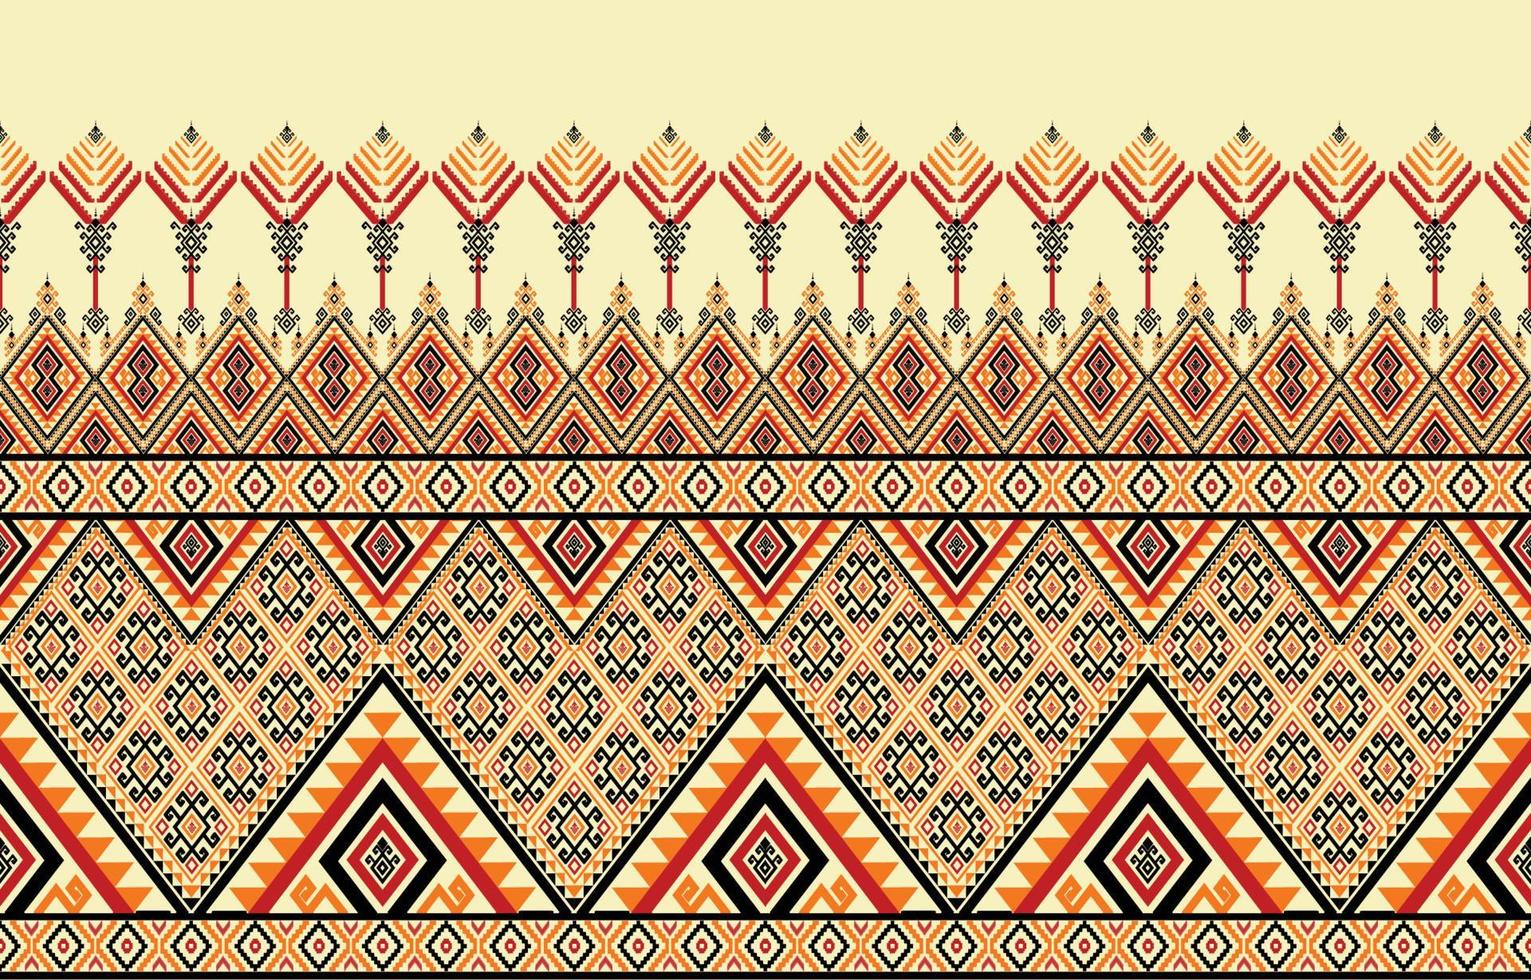 diseño tradicional de patrones sin fisuras de ikat oriental étnico geométrico para fondo, alfombra, papel pintado, ropa, envoltura, batik, tela, patrón de colores, ilustración vectorial. estilo de bordado vector